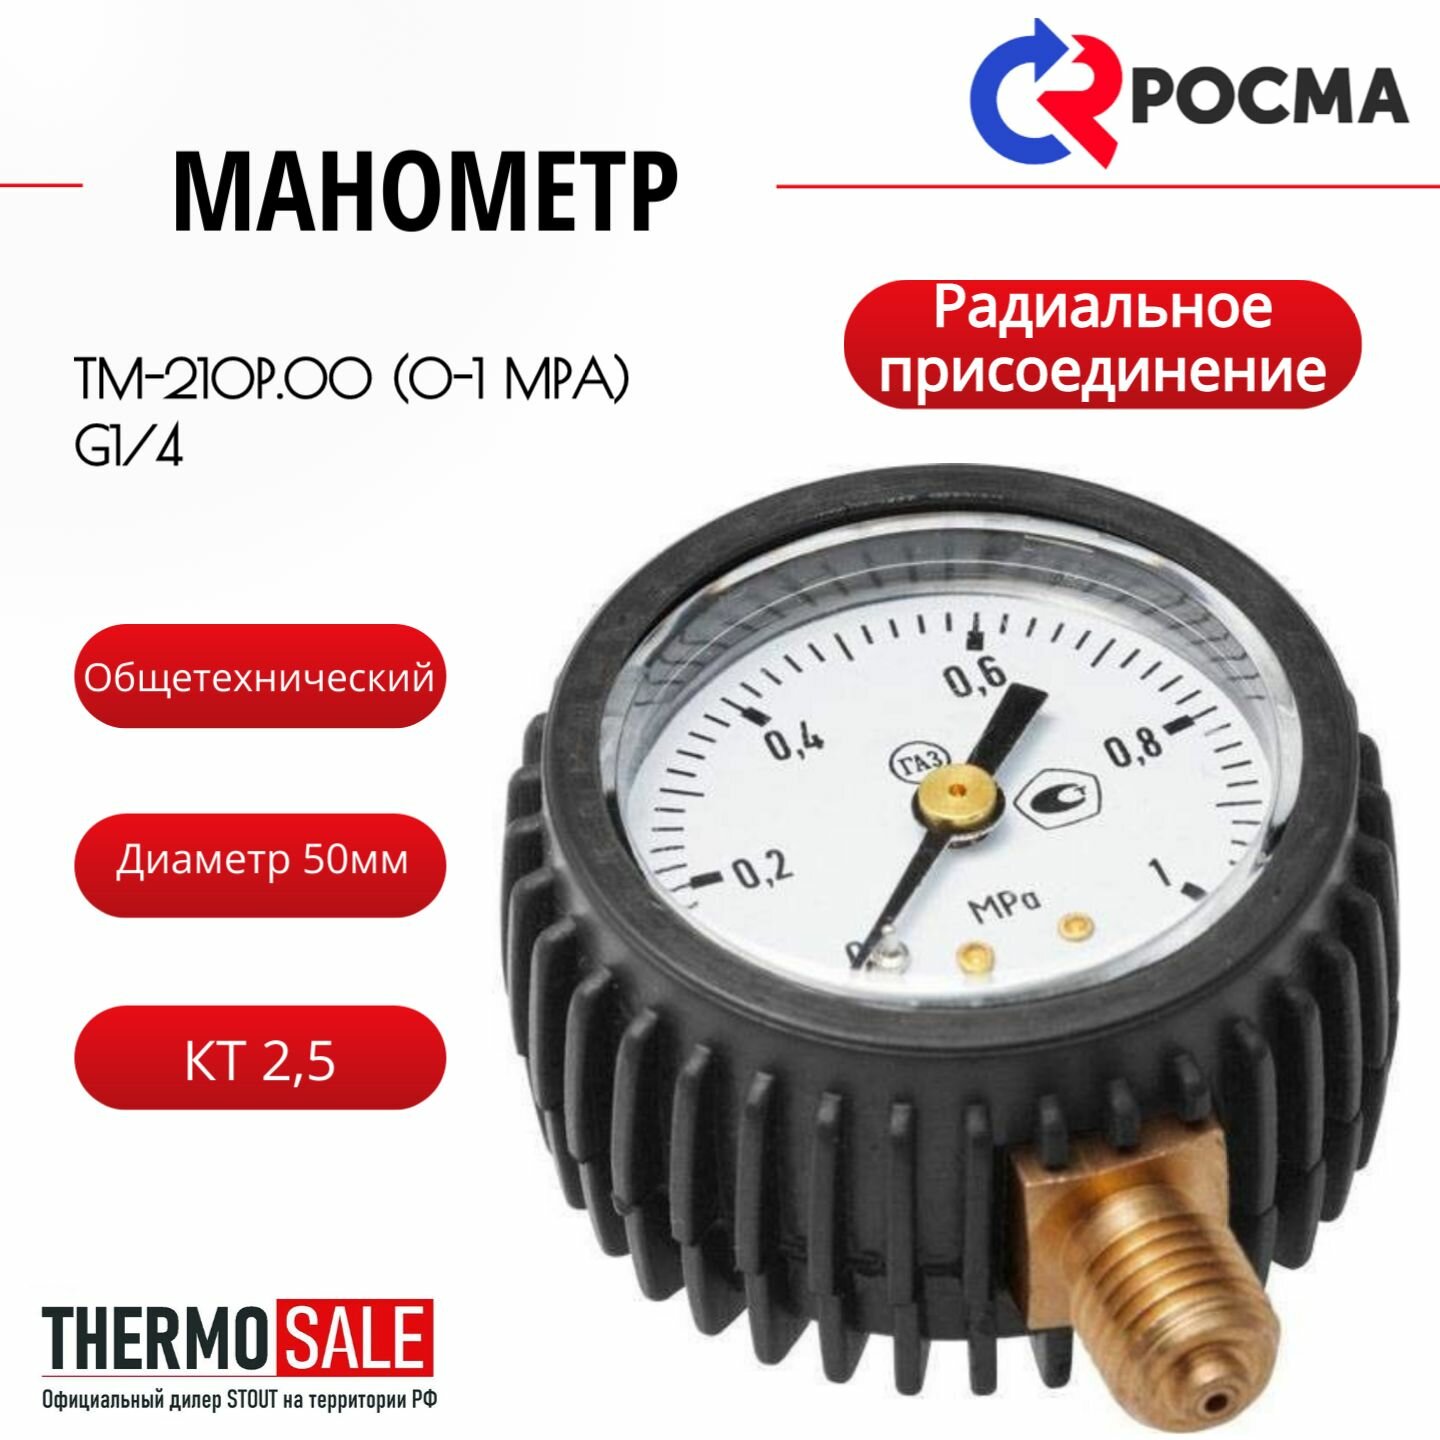 ТМ-210Р.00 (0-1 MPa) G1/4 манометр 50мм, общетехнический, радиальное присоединение, КТ 2,5 росма 00000000597